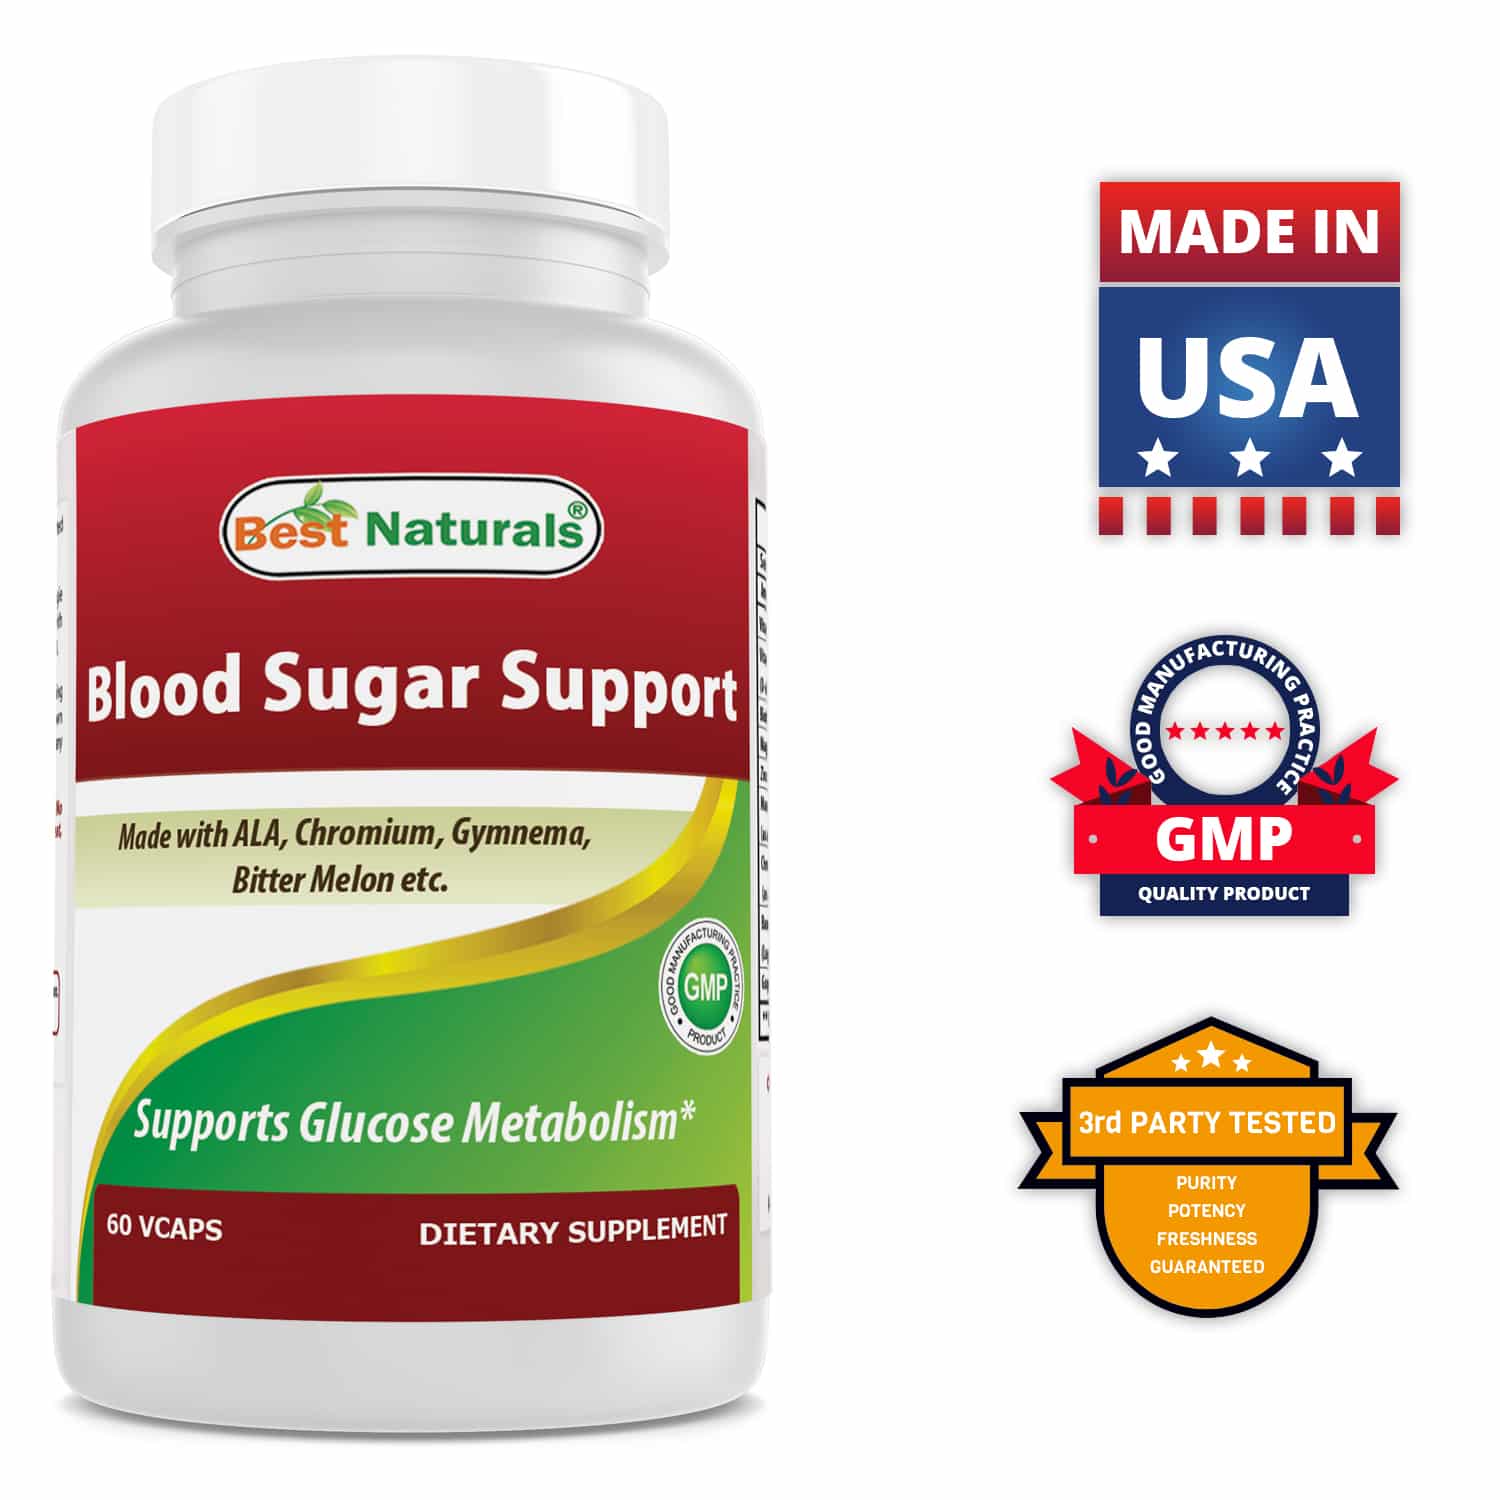 Best Naturals Blood Sugar Support Supplement